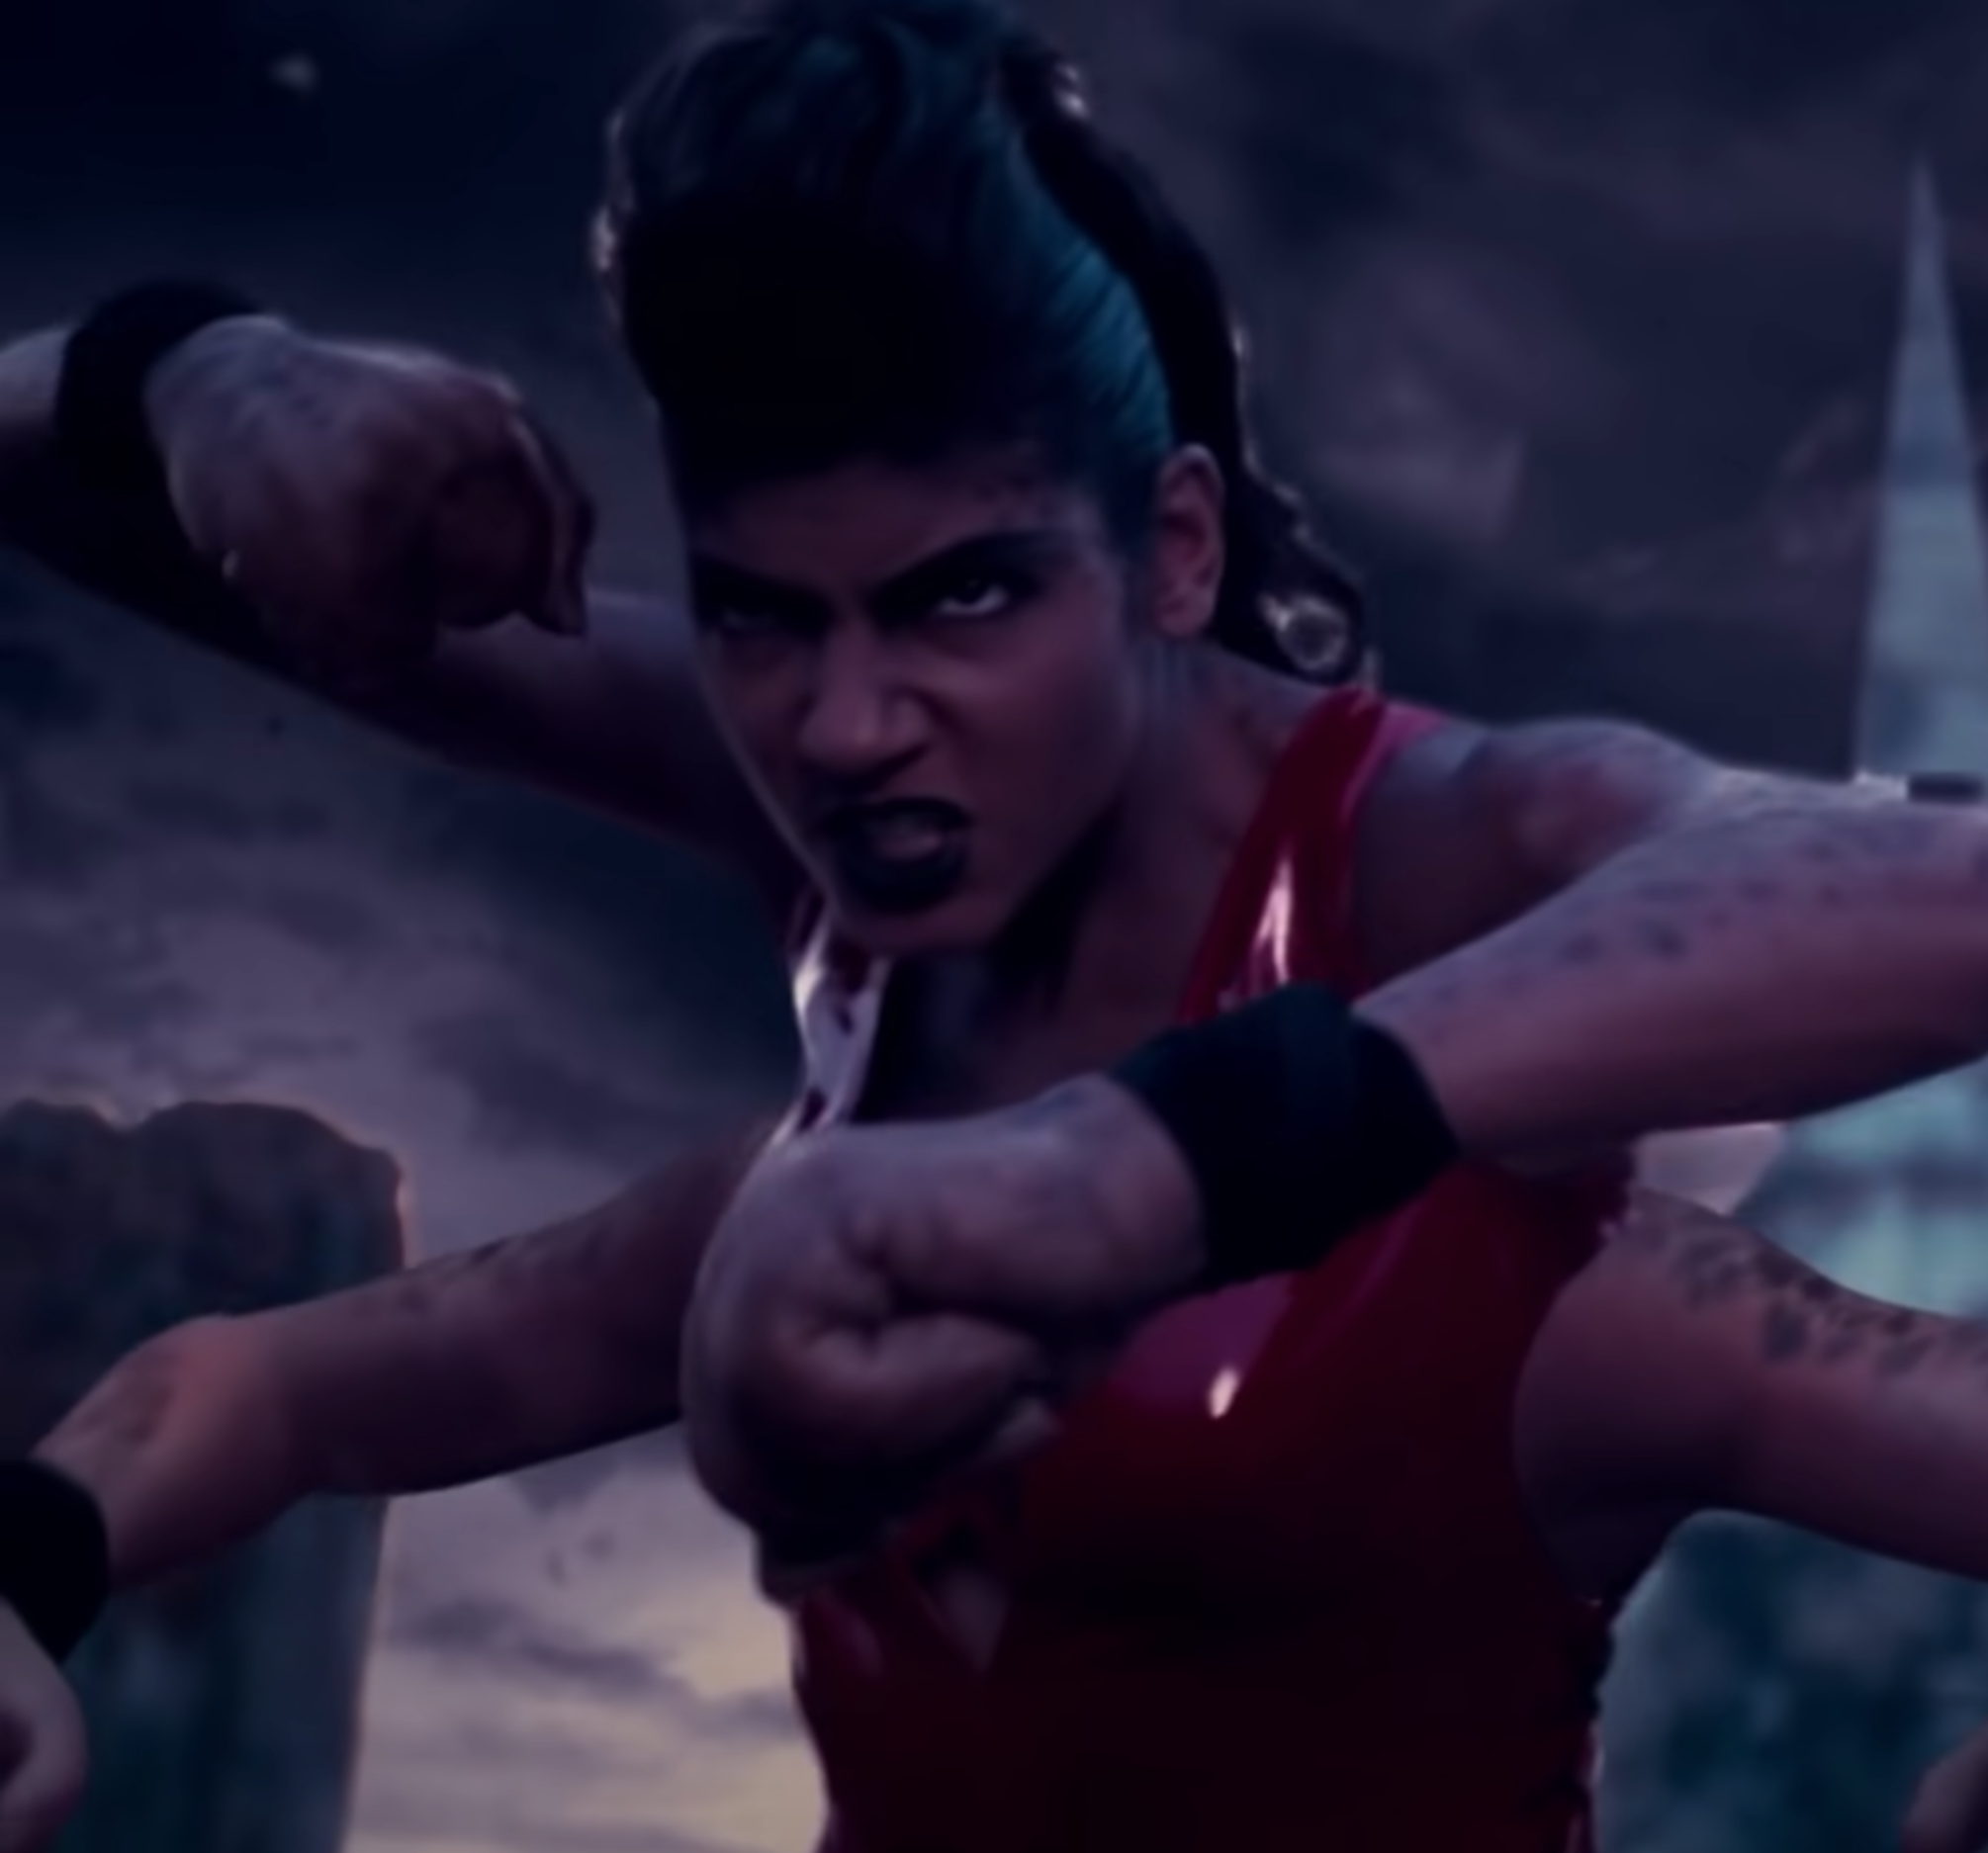 Sheeva, Mortal Kombat Wikia